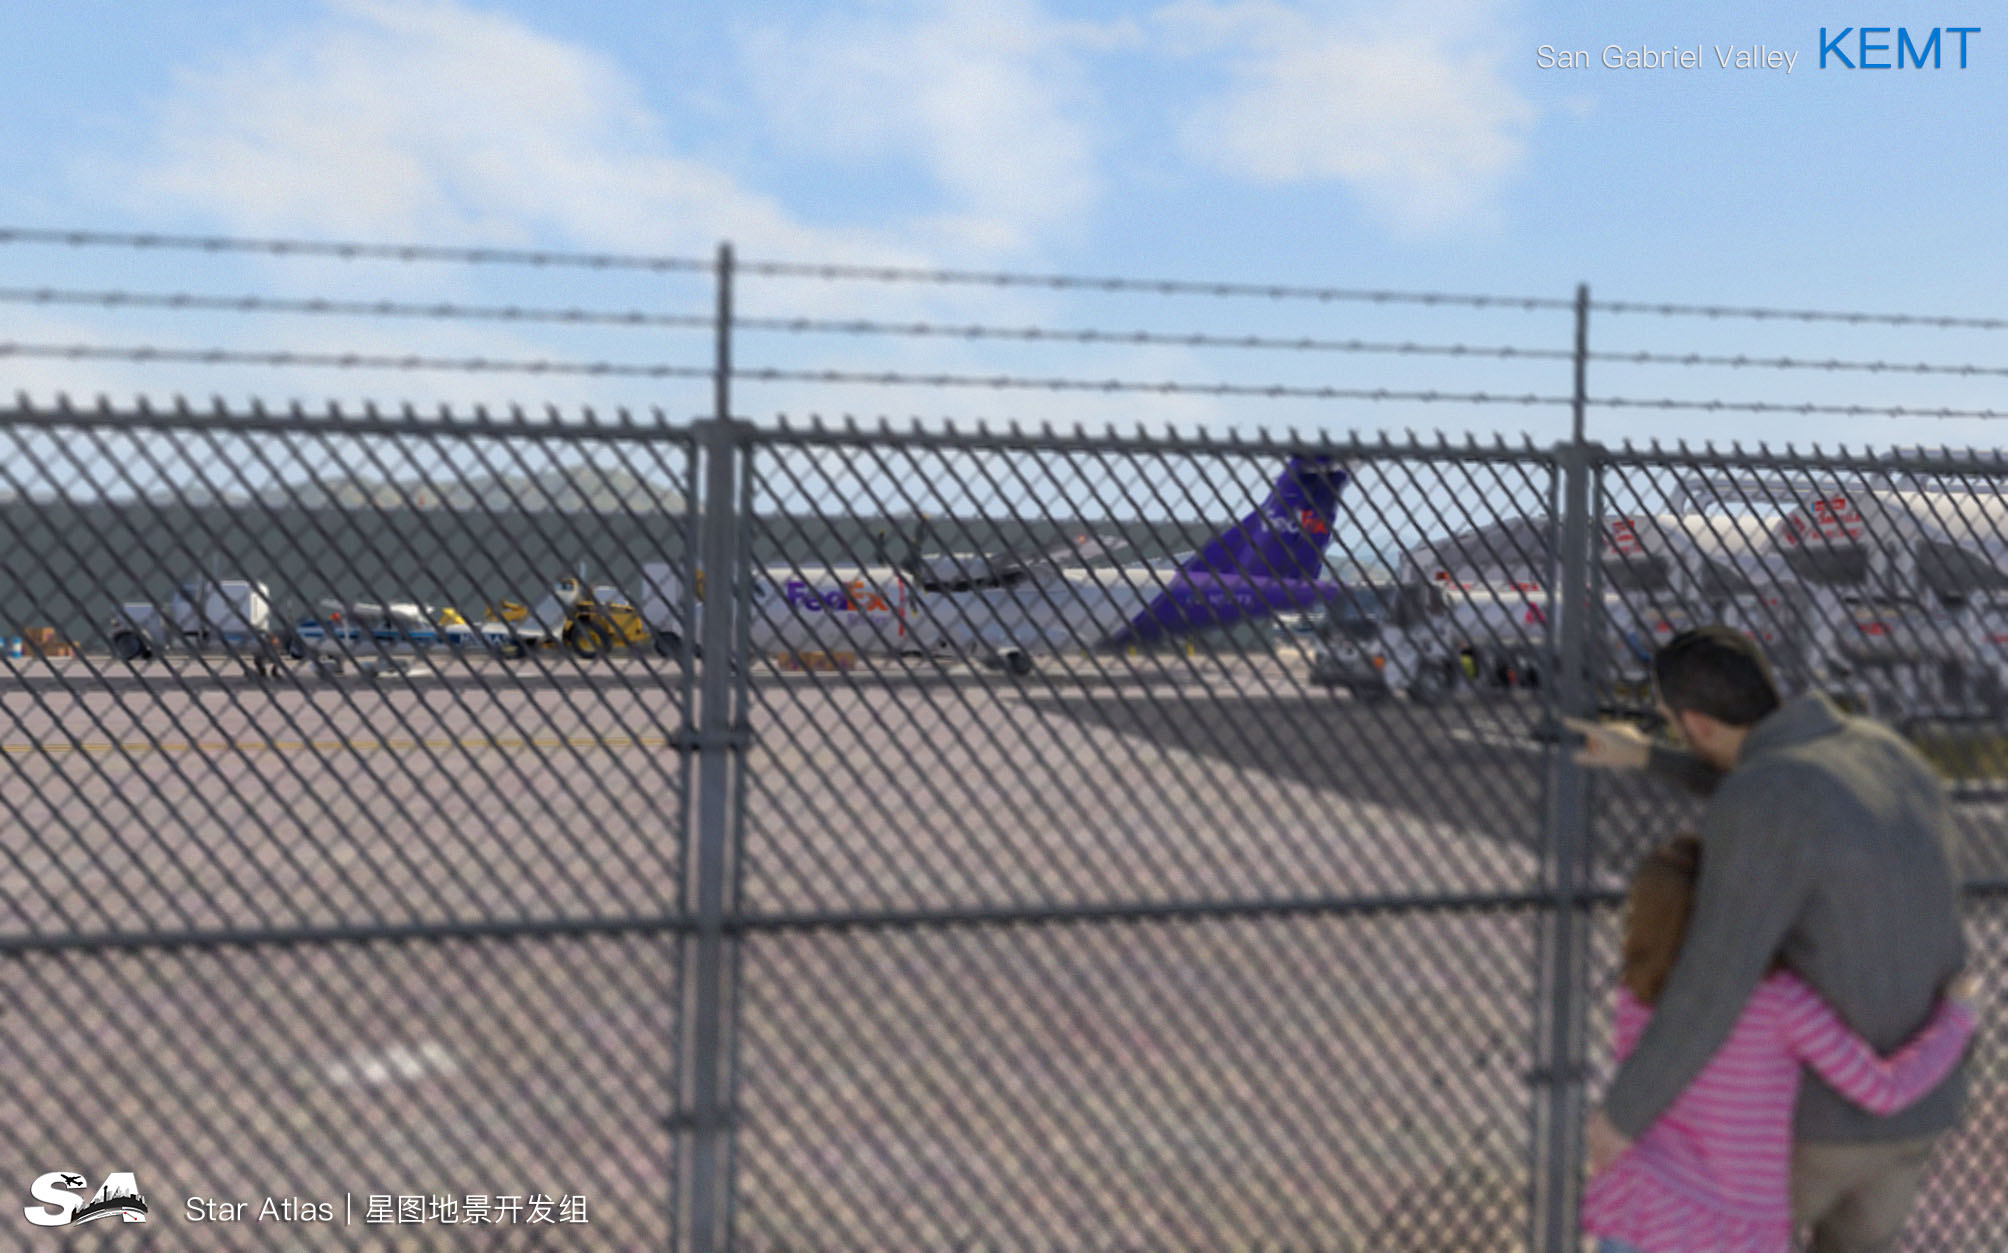 【X-Plane】KEMT-圣盖博谷机场 HD 1.0-688 